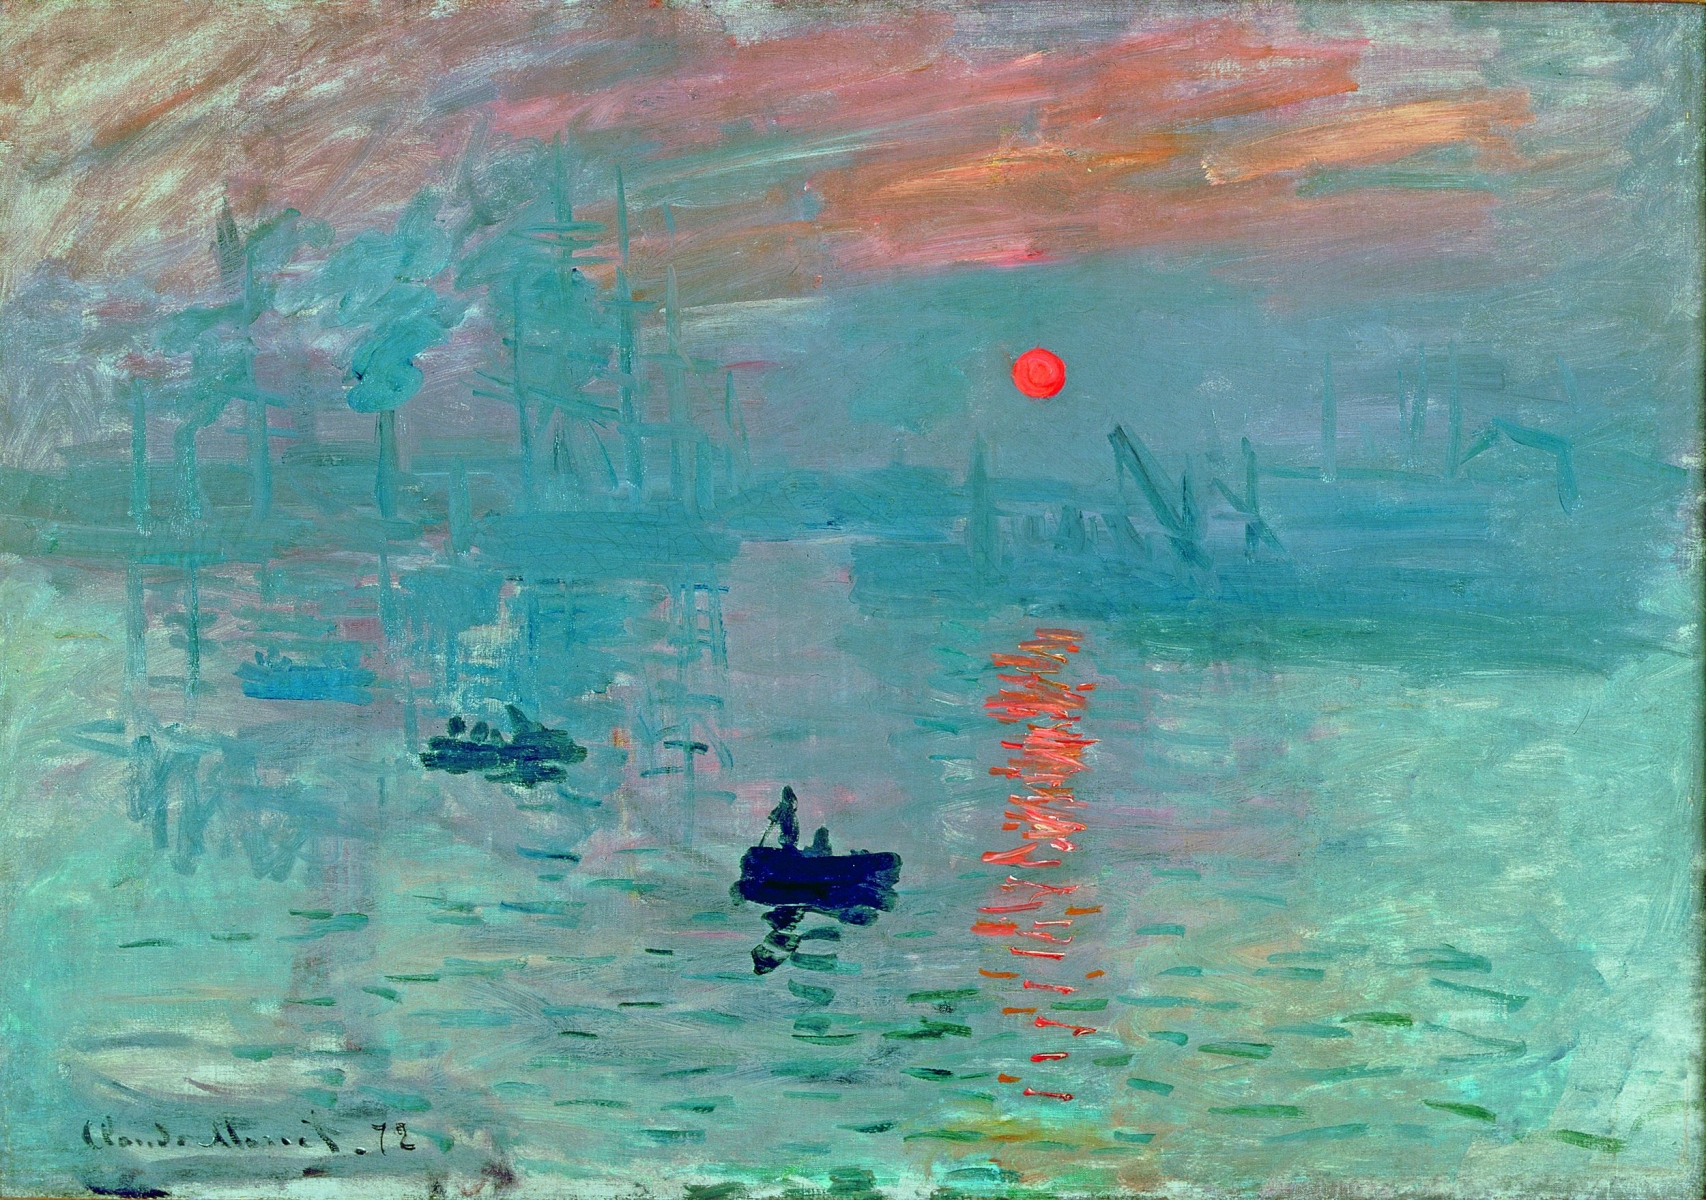 "Impression, soleil levant" de Claude Monet sera à la Fondation dès le 9 mai. Une première en Suisse.